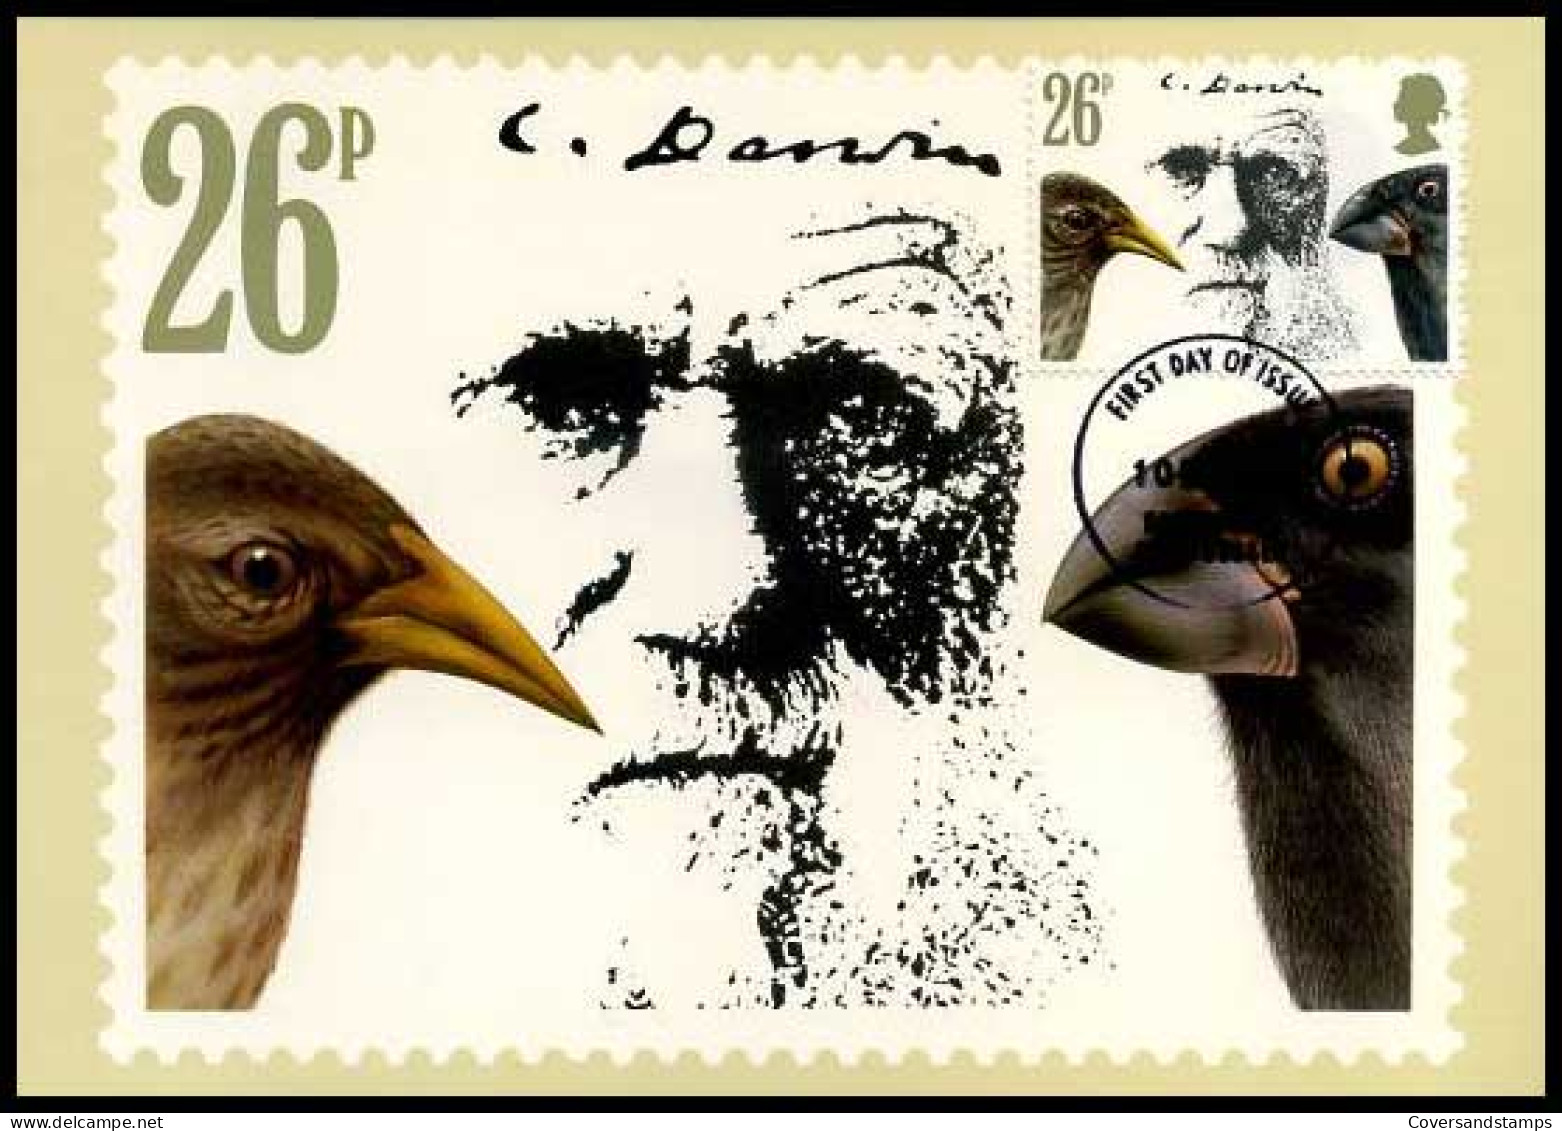 Groot-Britannië - MK - Charles Darwin                               - Maximum Cards